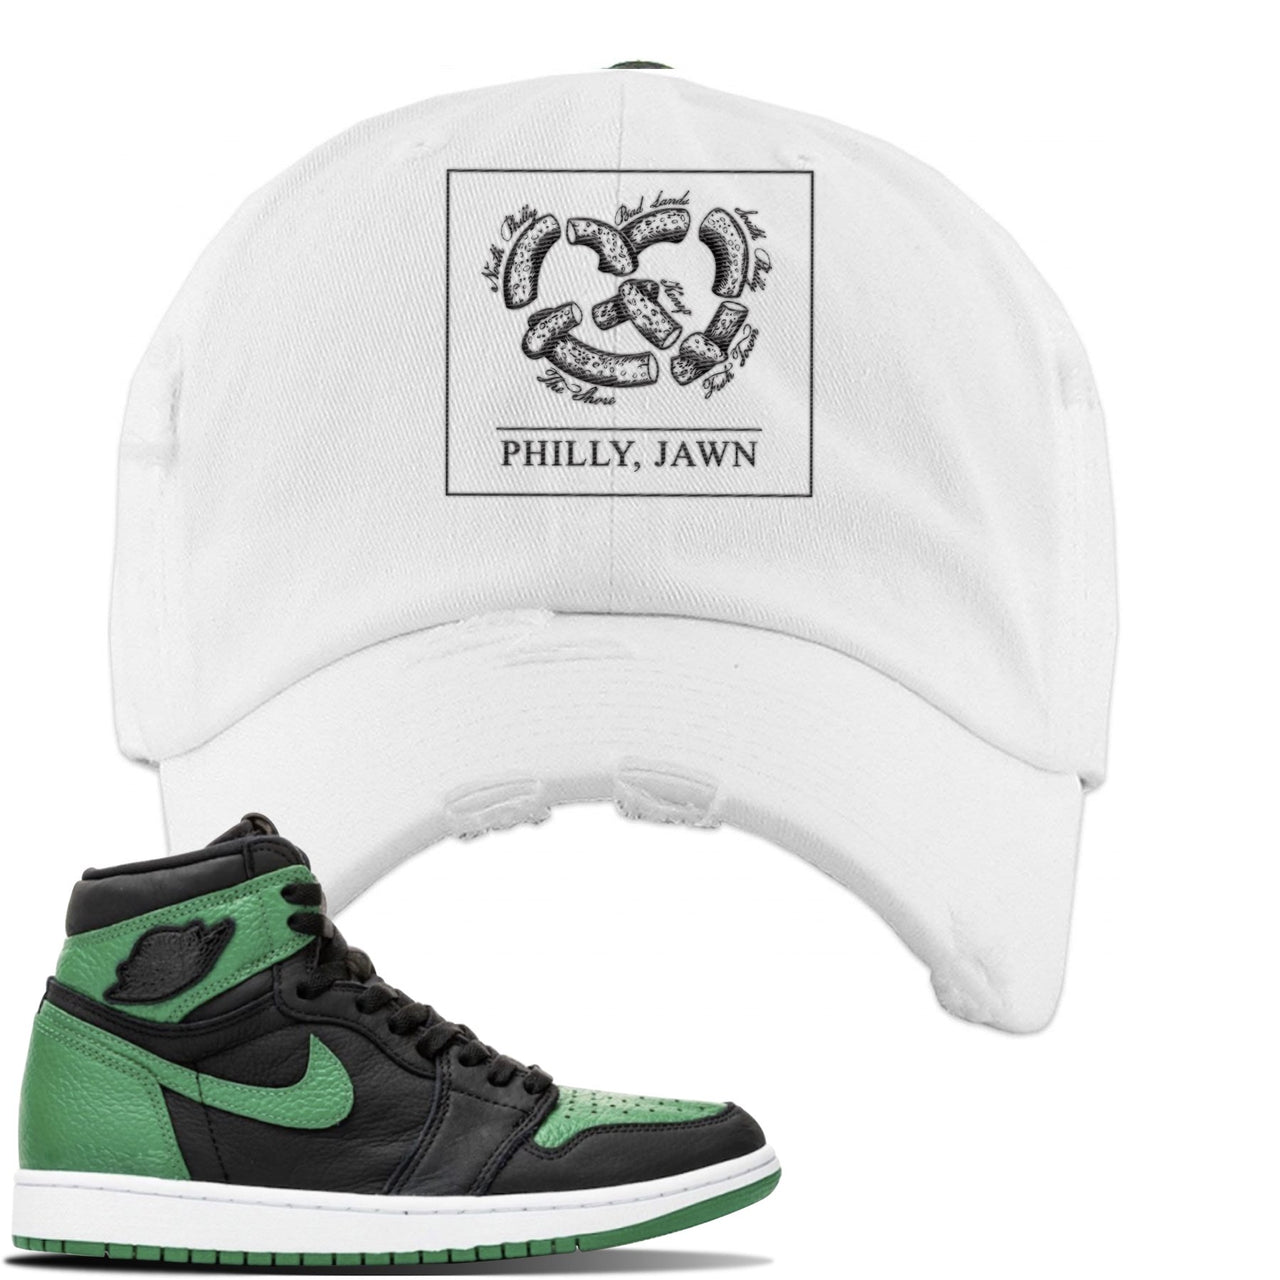 Jordan 1 Retro High OG Pine Green Gym Sneaker White Distressed Dad Hat | Hat to match Air Jordan 1 Retro High OG Pine Green Gym Shoes | Philly Pretzel